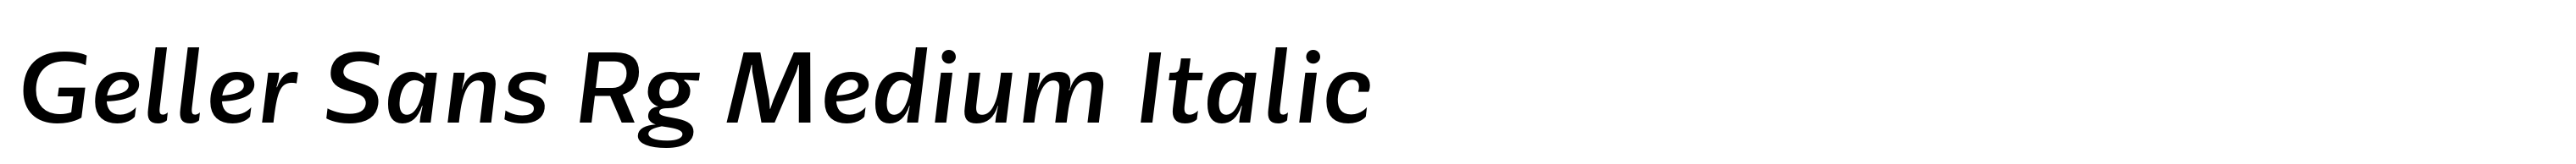 Geller Sans Rg Medium Italic